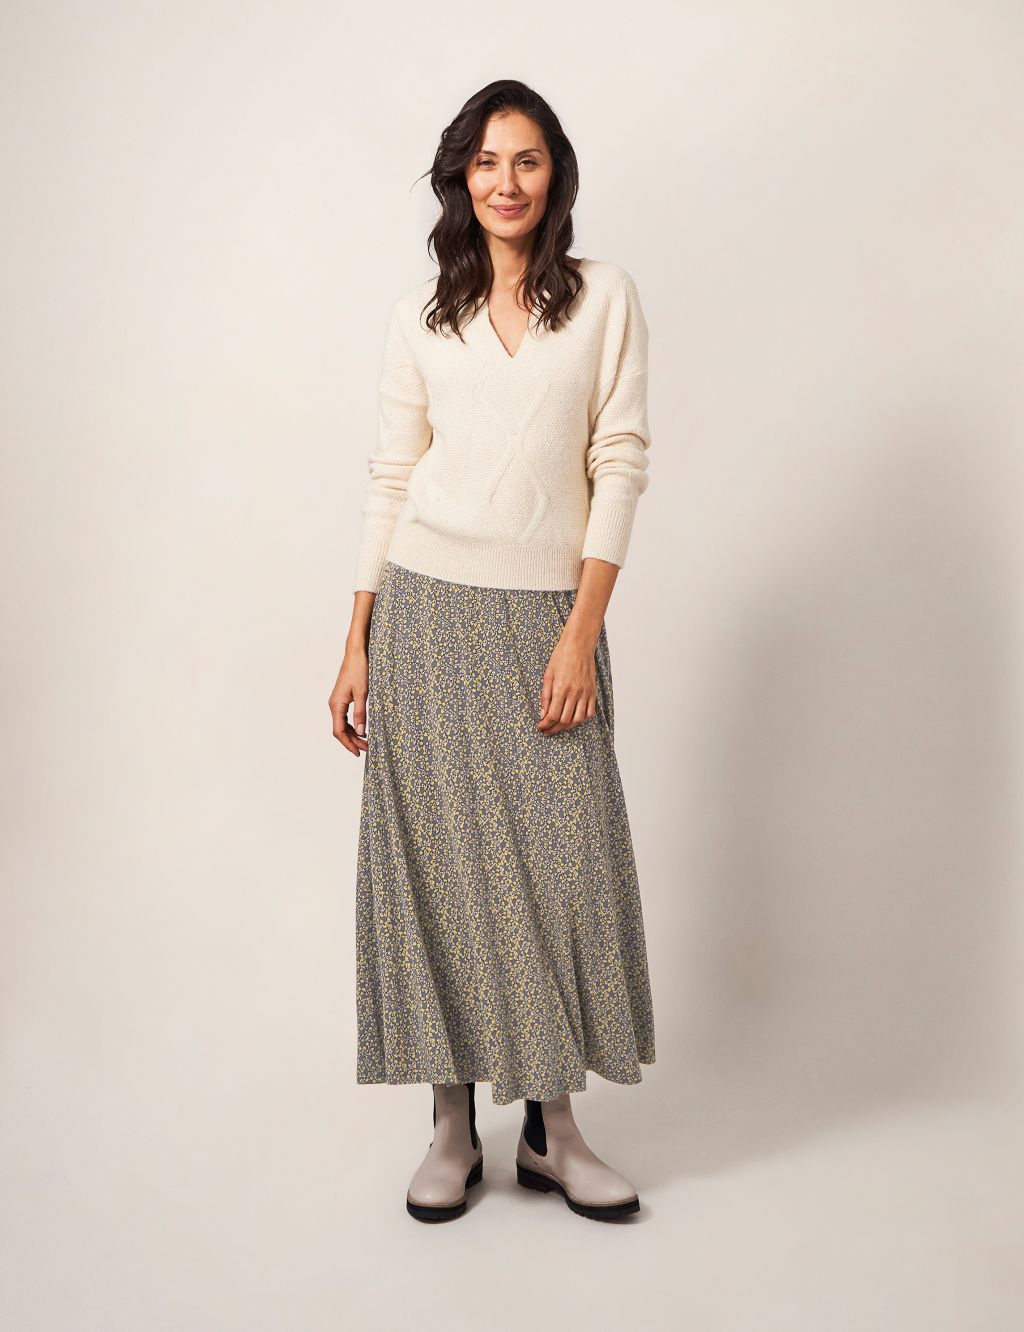 Printed Midaxi A-Line Skirt image 1